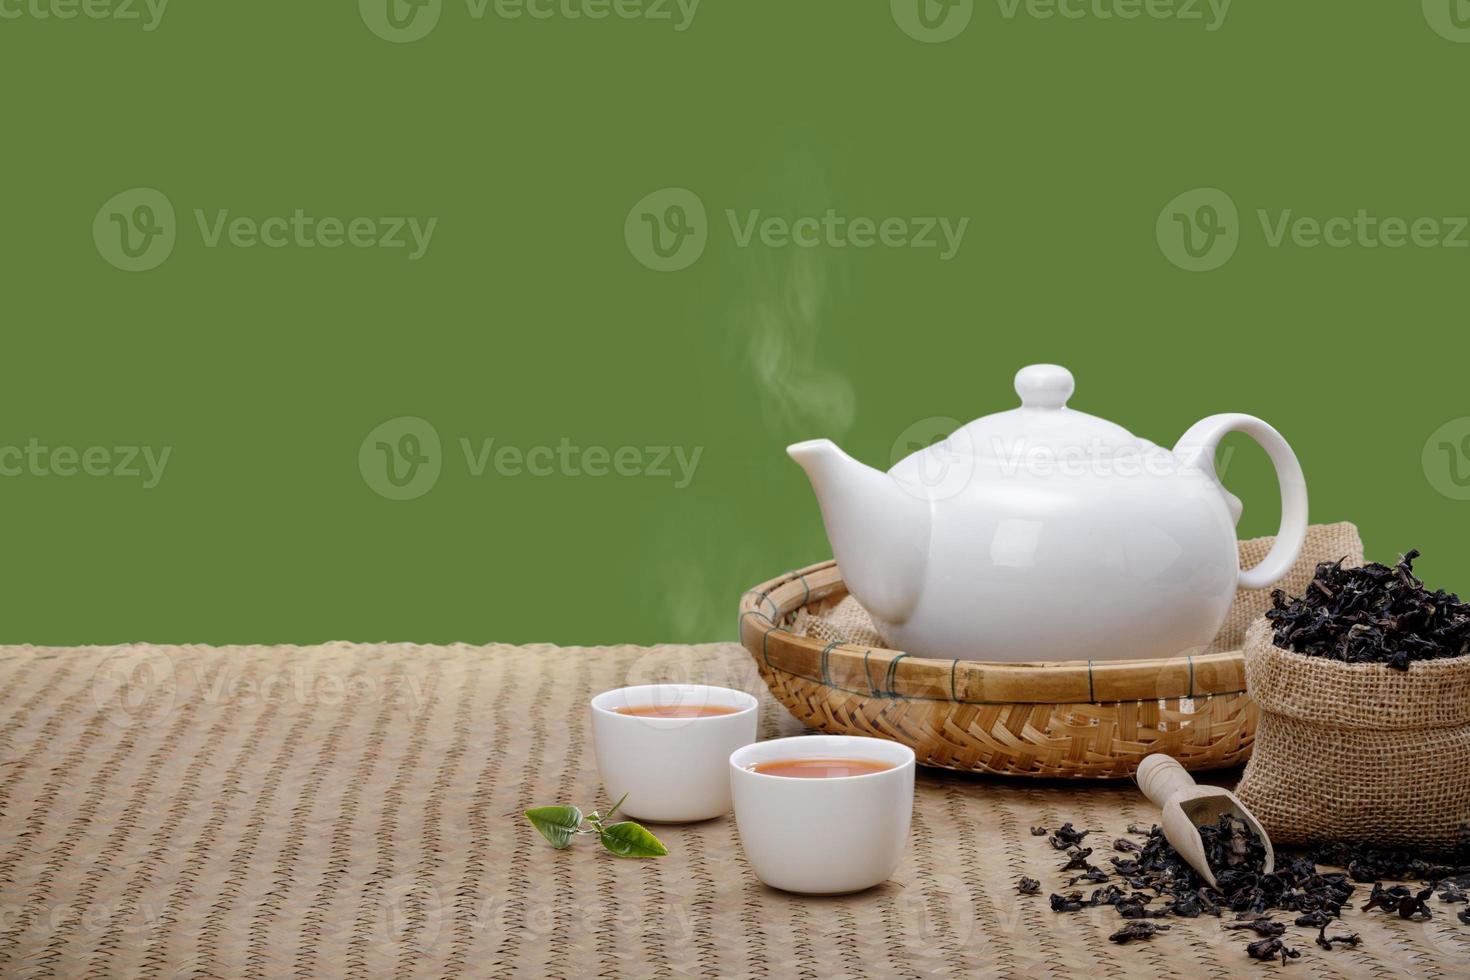 warm kop van thee met theepot, groen thee bladeren en droog kruiden Aan de bamboe mat Bij ochtend- isoleren groen achtergrond met leeg ruimte, biologisch Product van de natuur voor gezond met traditioneel foto